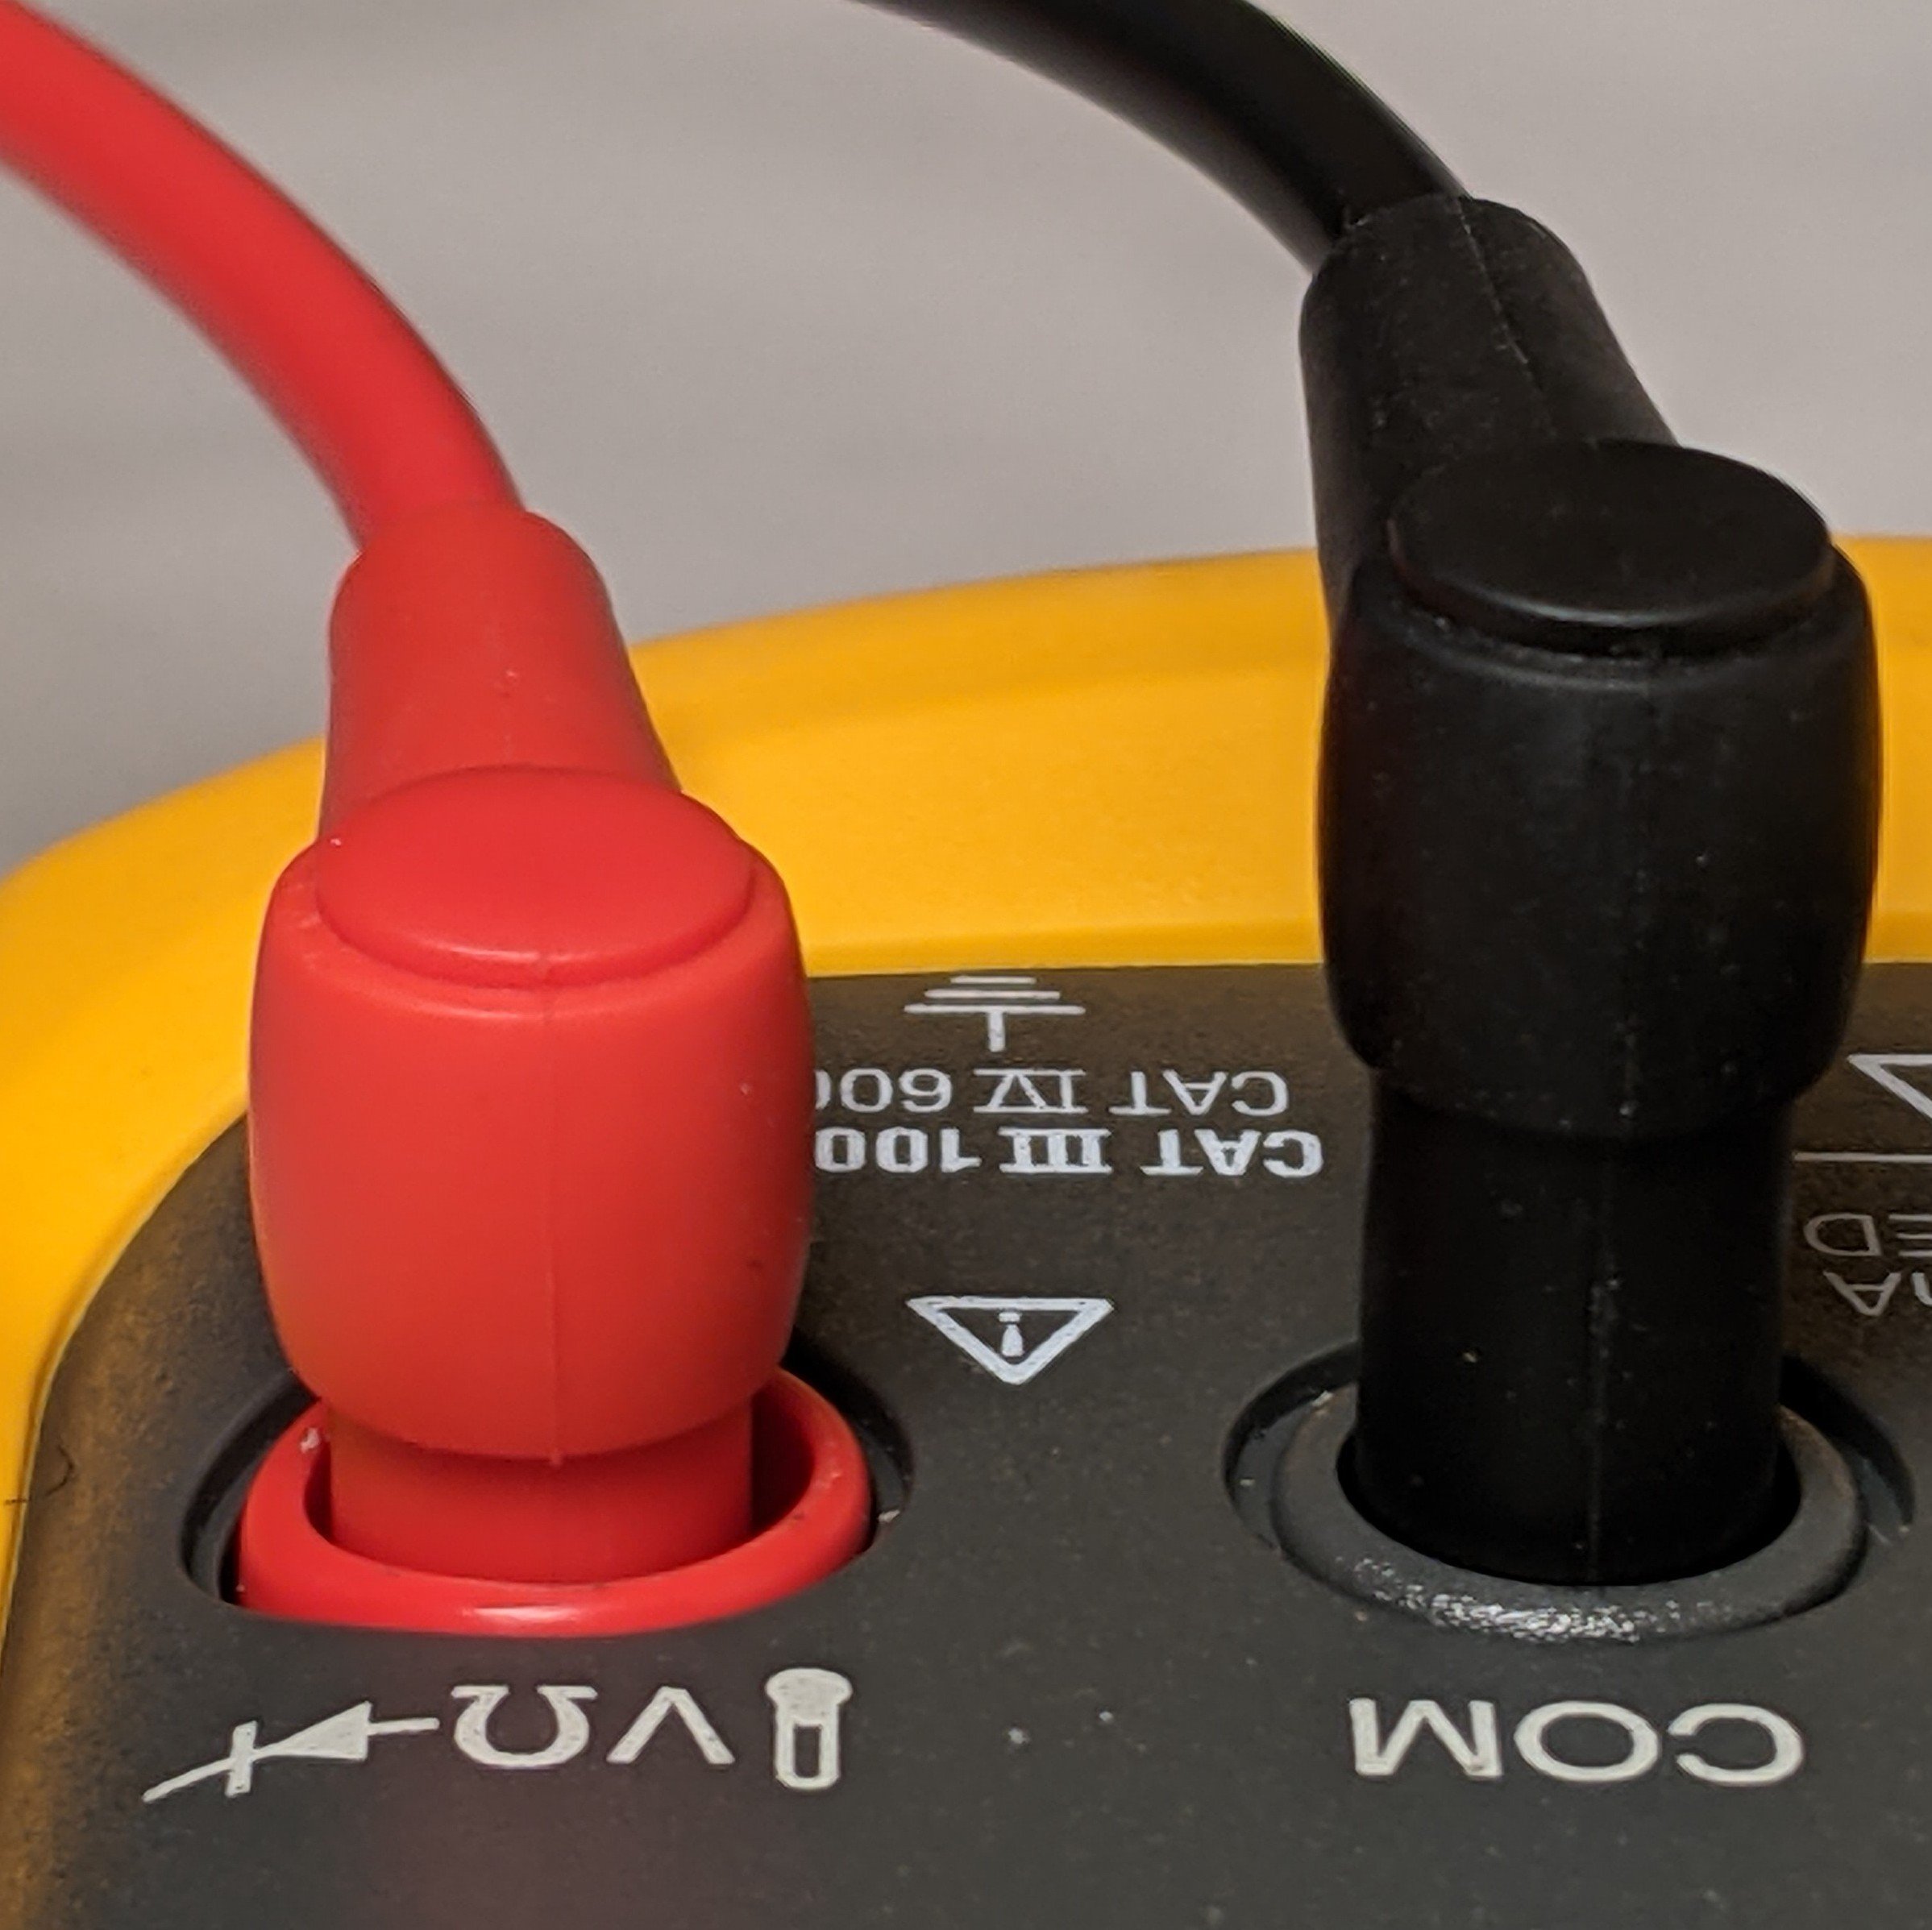 Powiadomienie o zagrożeniu bezpieczeństwa dotyczące przyrządów Fluke 8x V — częściowo wysunięty czarny przewód pomiarowy i całkowicie włożony czerwony przewód